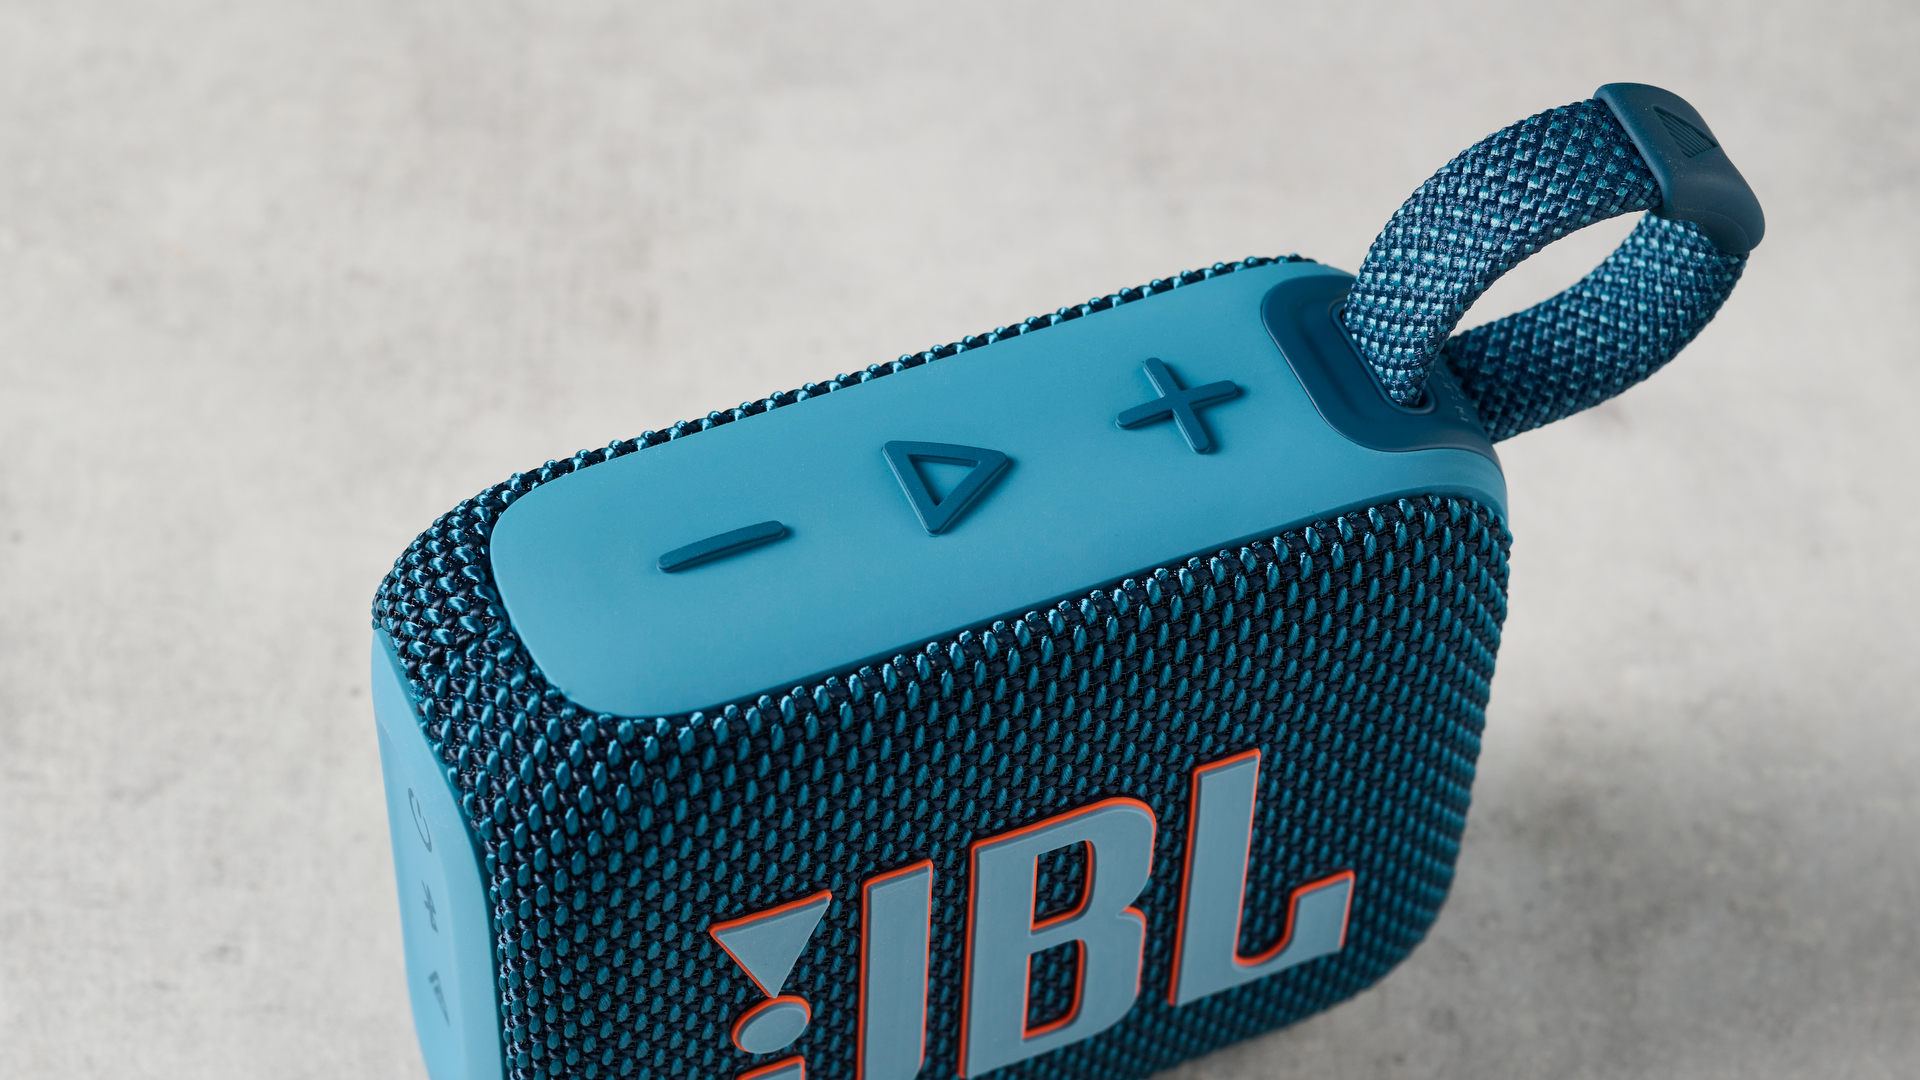 תמונה של ה-JBL Go 4 בכחול על משטח בטון על רקע קיר כחול.